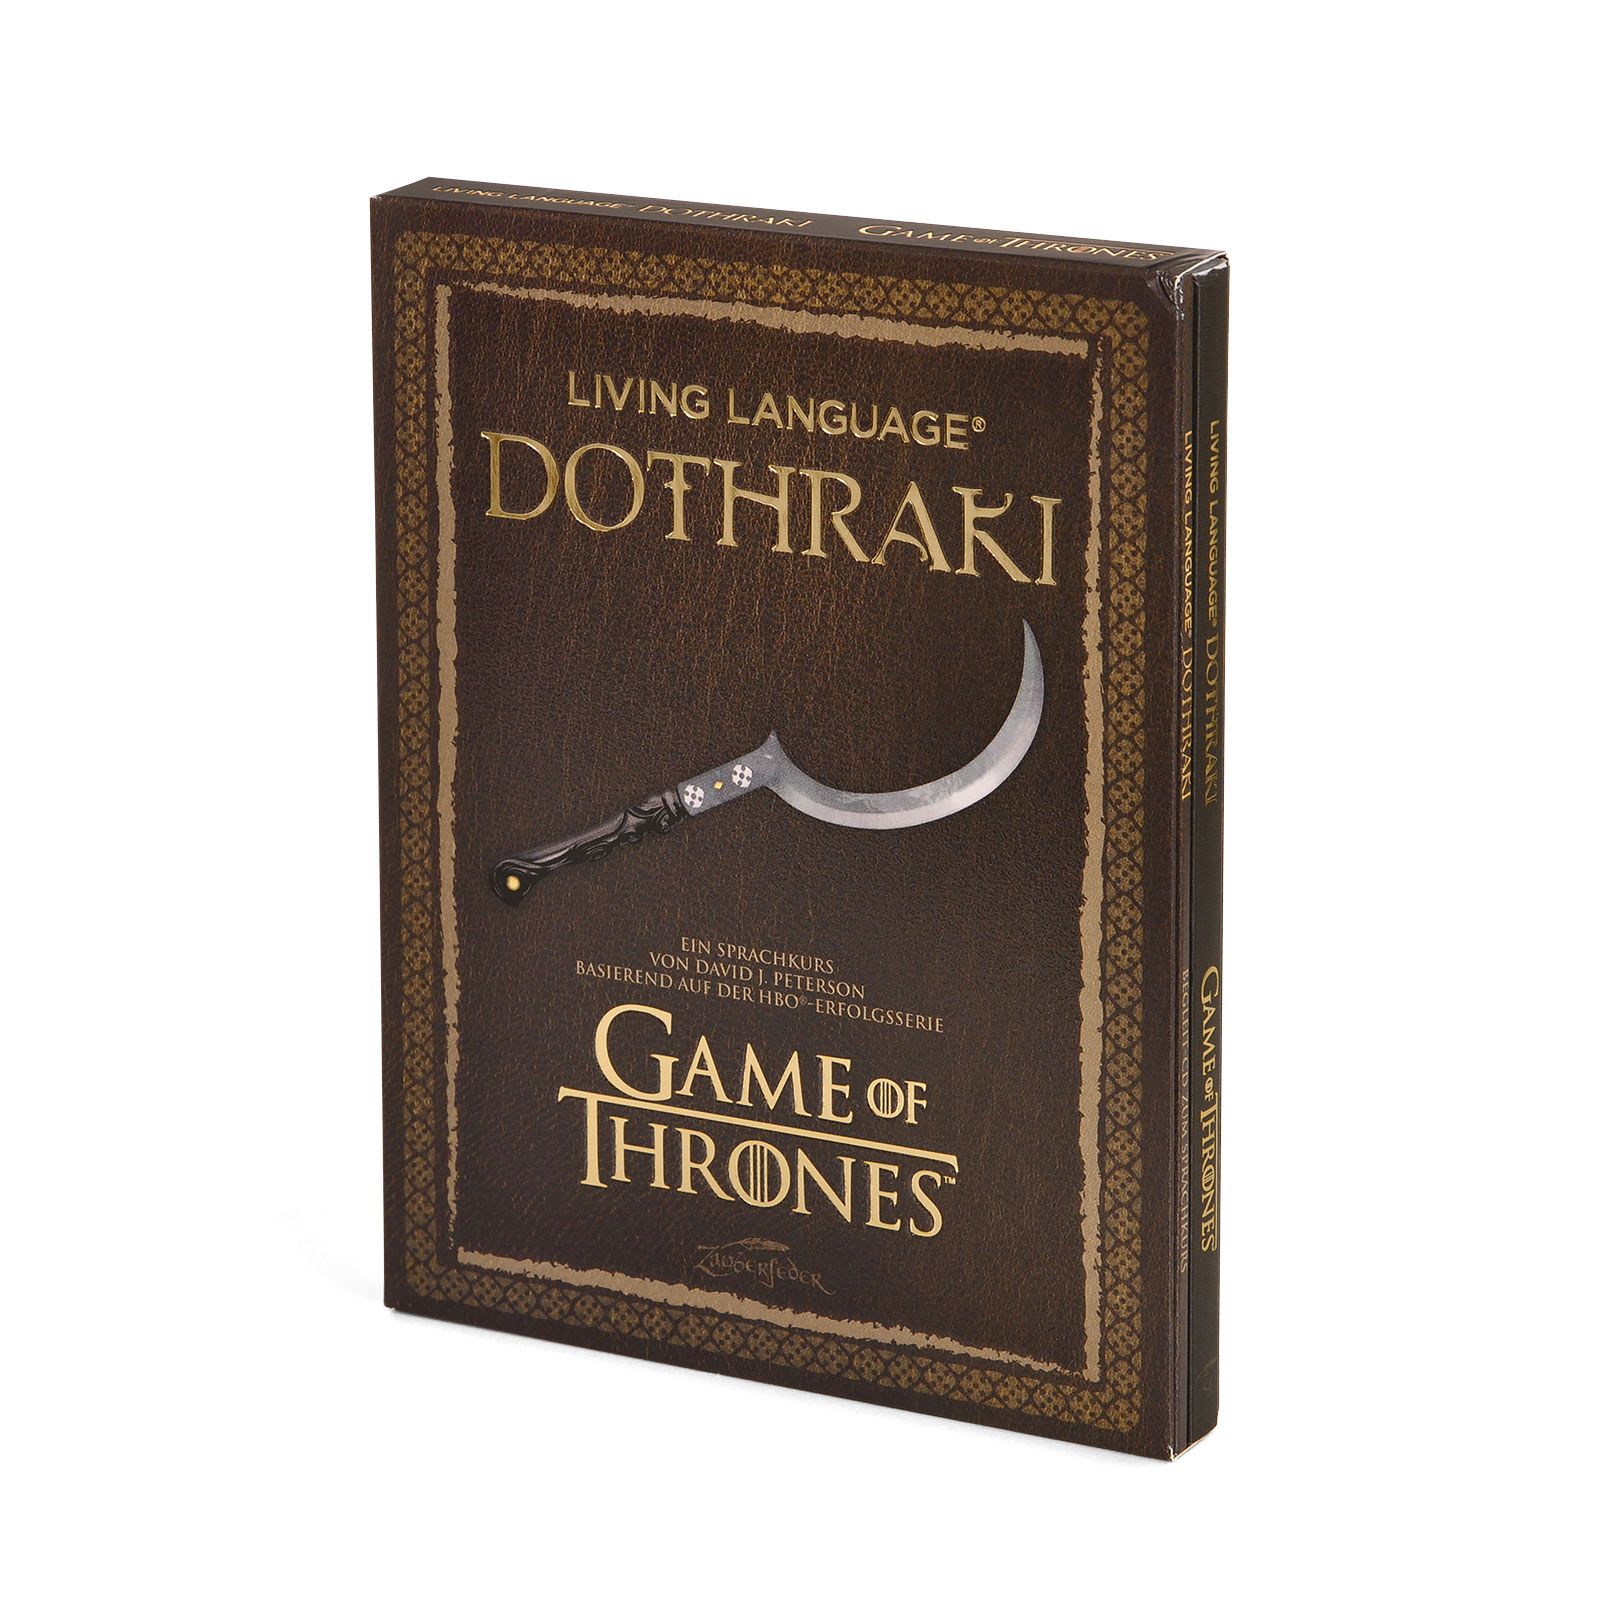 Game of Thrones - Dothraki - Un cours de langue